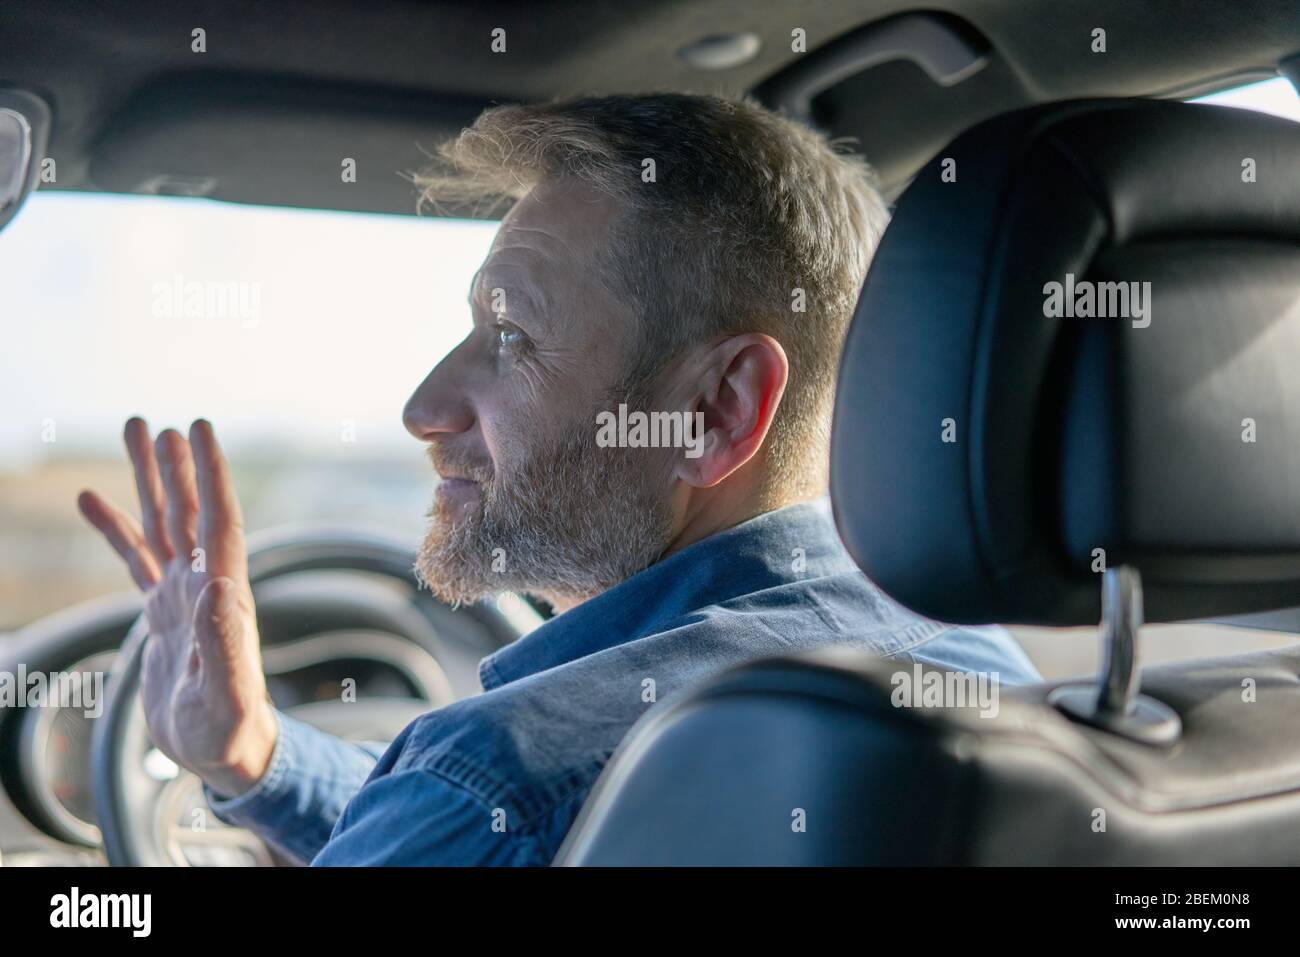 Profil d'un chauffeur de voiture sympathique avec des cheveux et des barbe grisants pris de l'intérieur de la voiture Banque D'Images